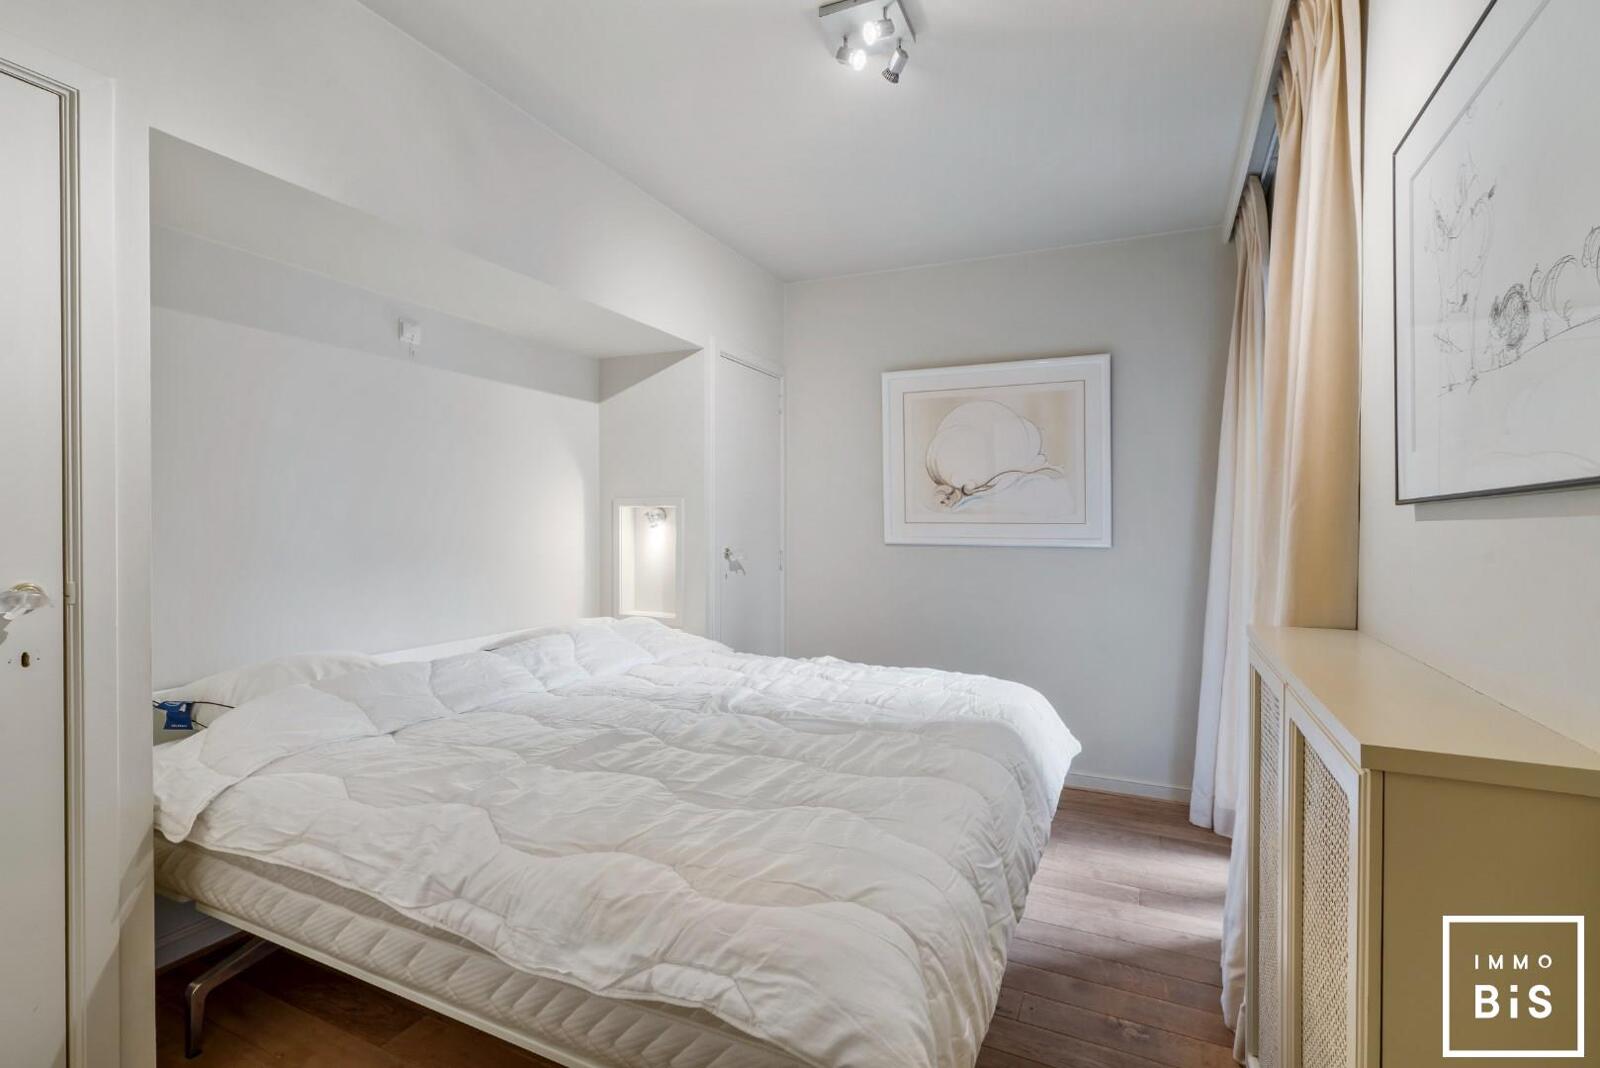 Uitstekend gelegen appartement met 3 slaapkamers in hartje Zoute op de Kustlaan aan de minigolf!  8